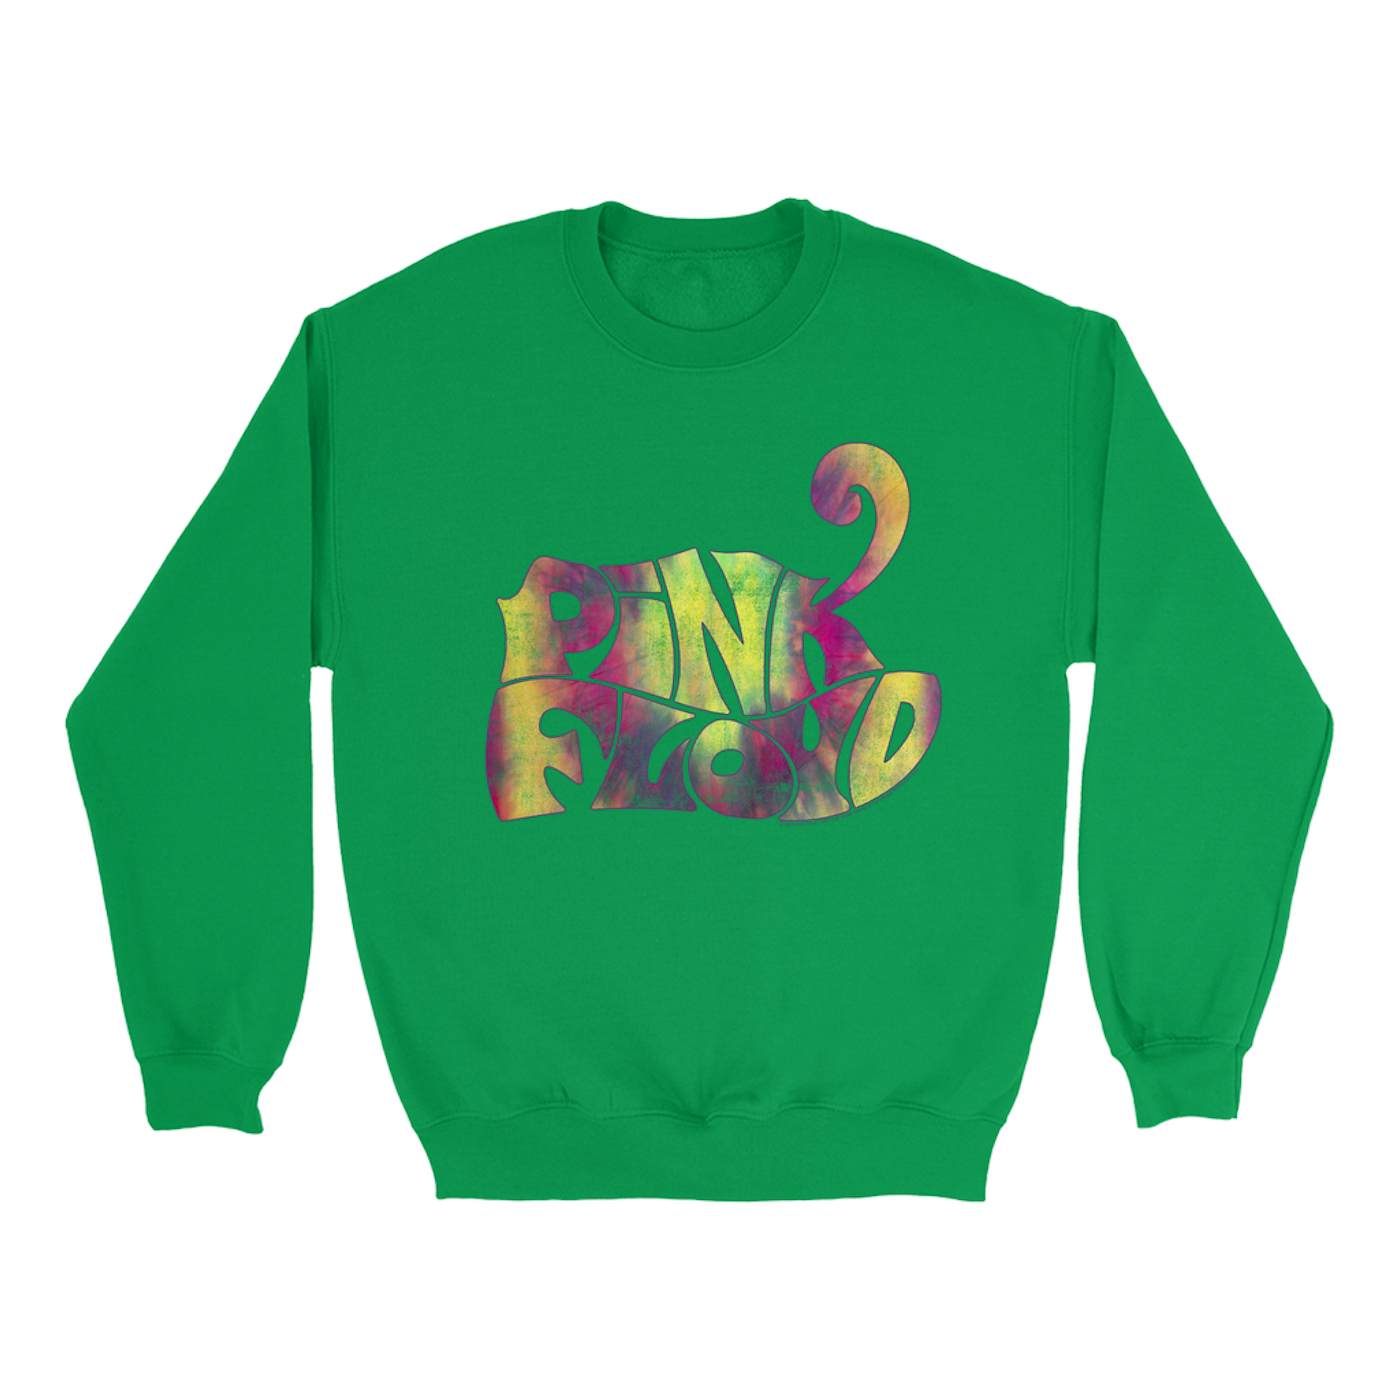 Pink Floyd Bright Colored Sweatshirt | Tie Dye Groovy Logo Distressed Pink Floyd Sweatshirt (Merchbar Exclusive)